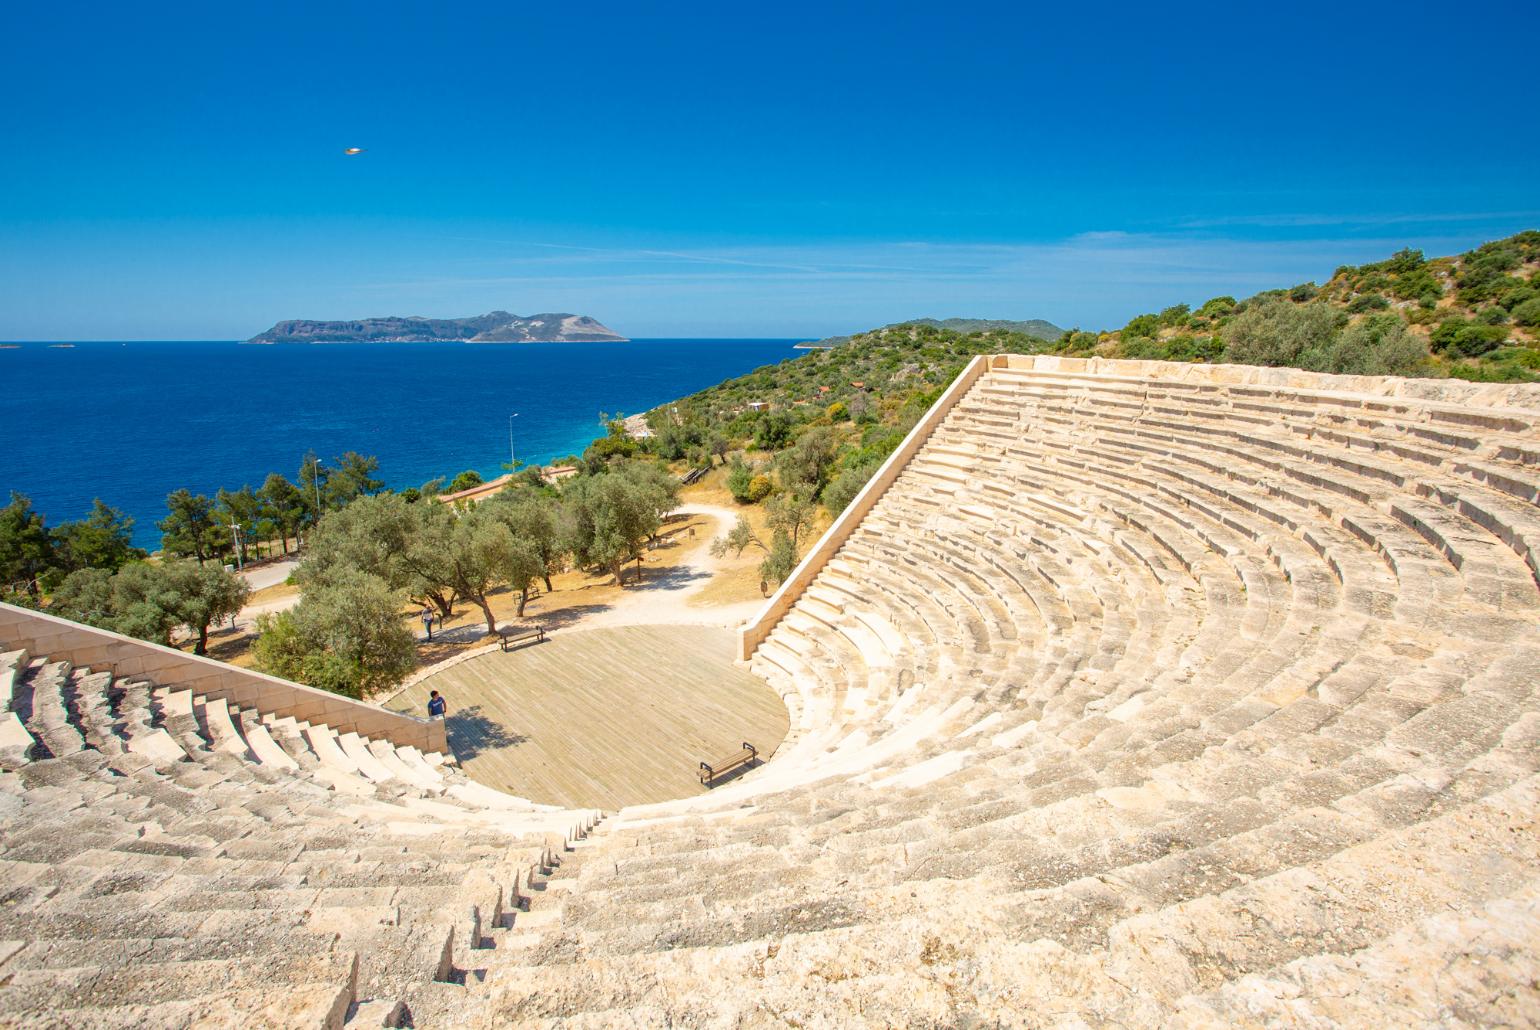 Amphitheatre on Kas peninsula